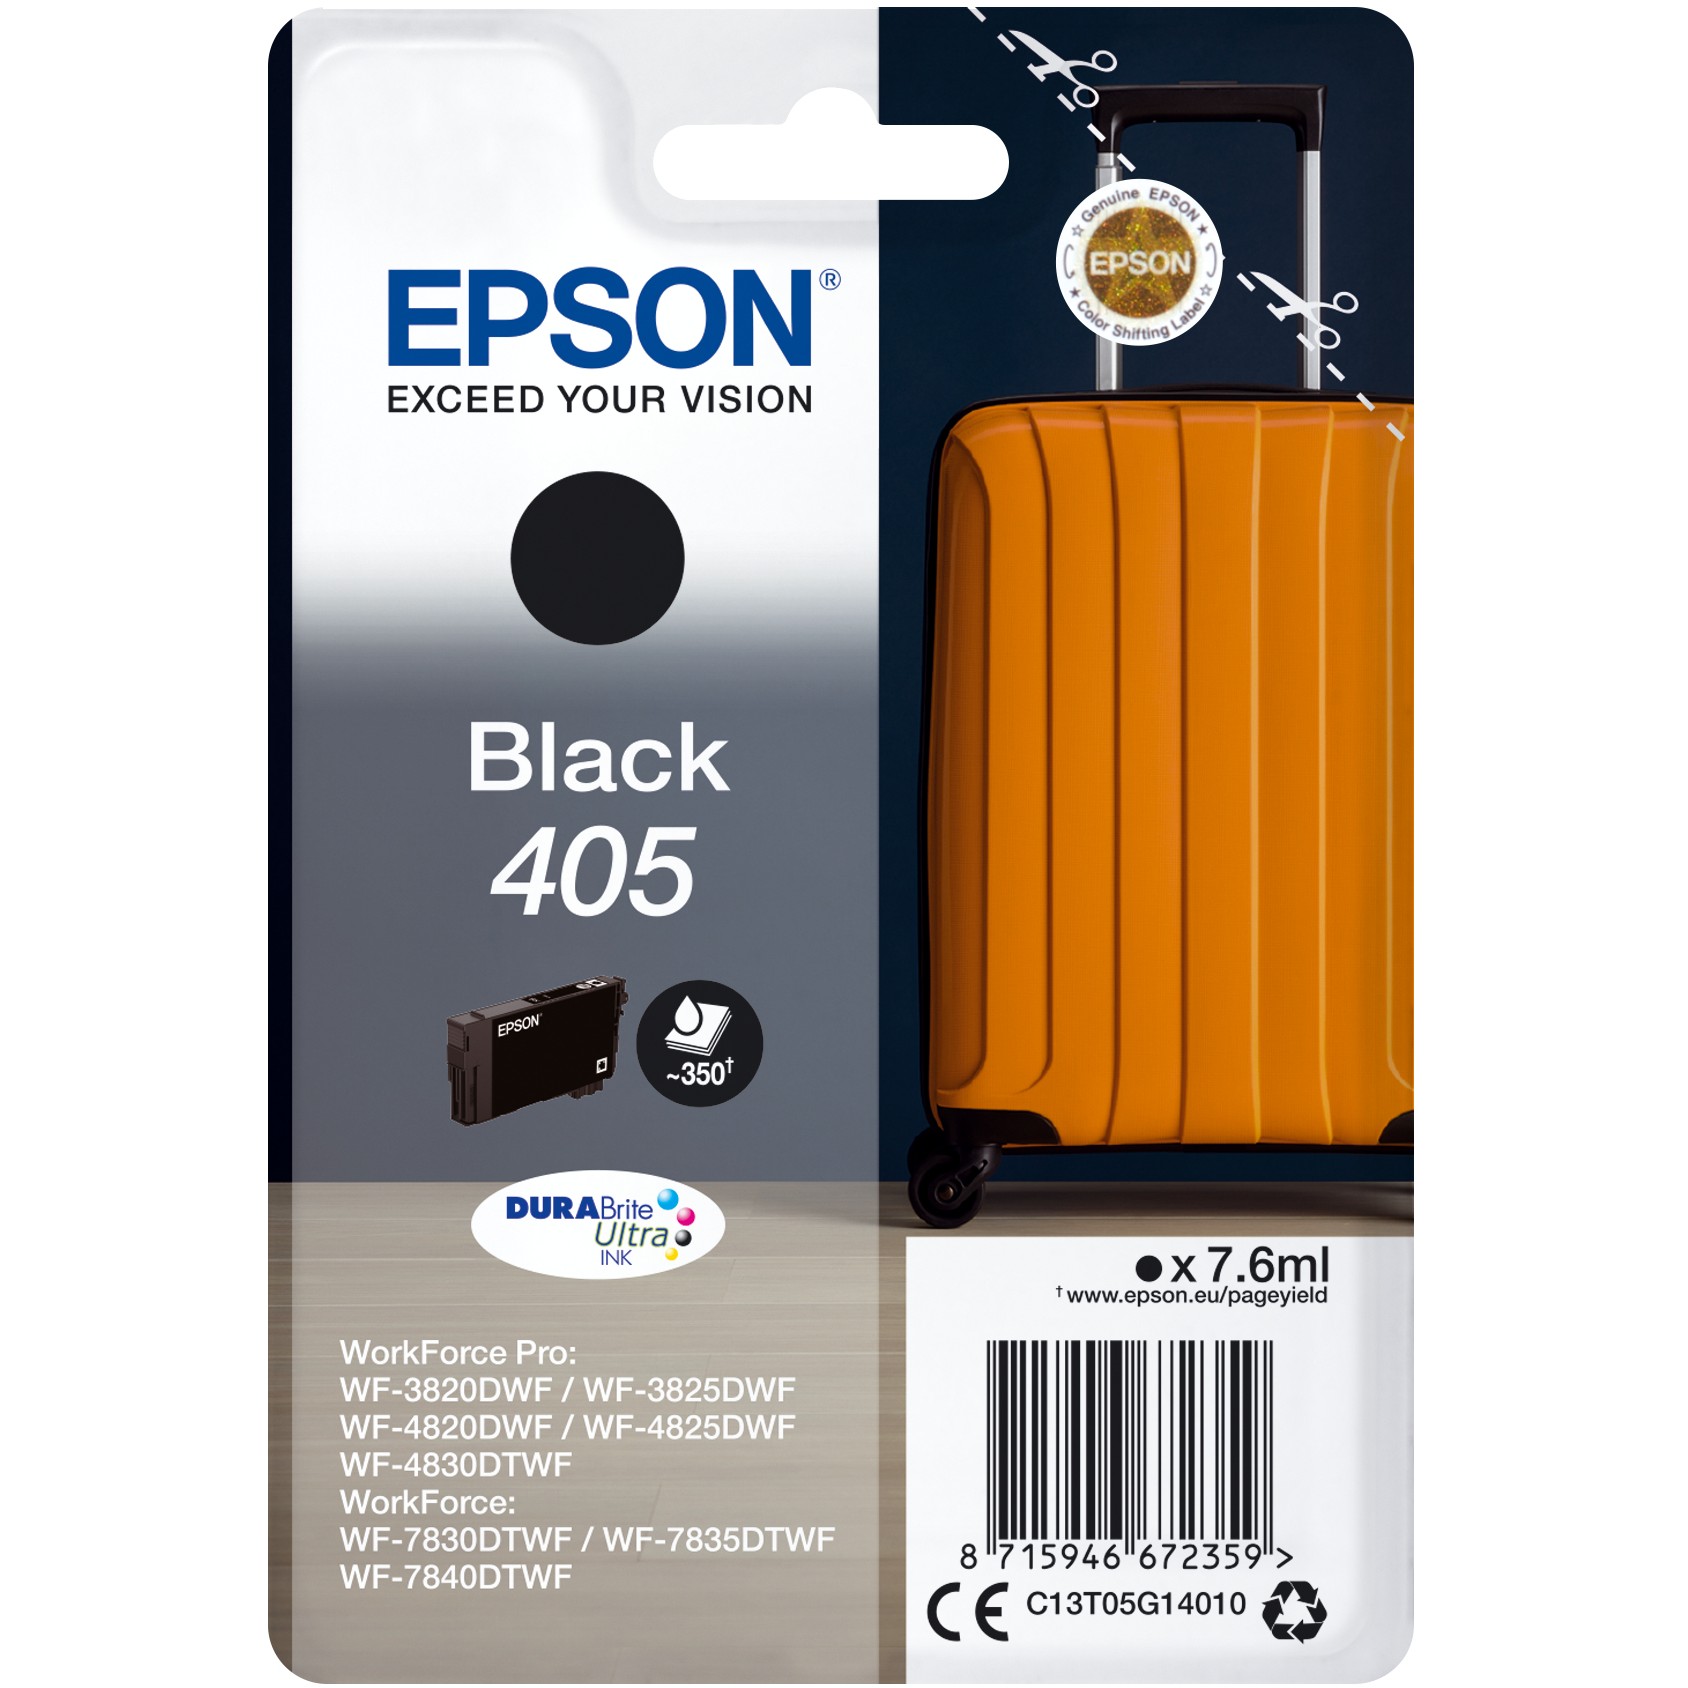 Epson 405 DURABrite Ultra Ink ink cartridge